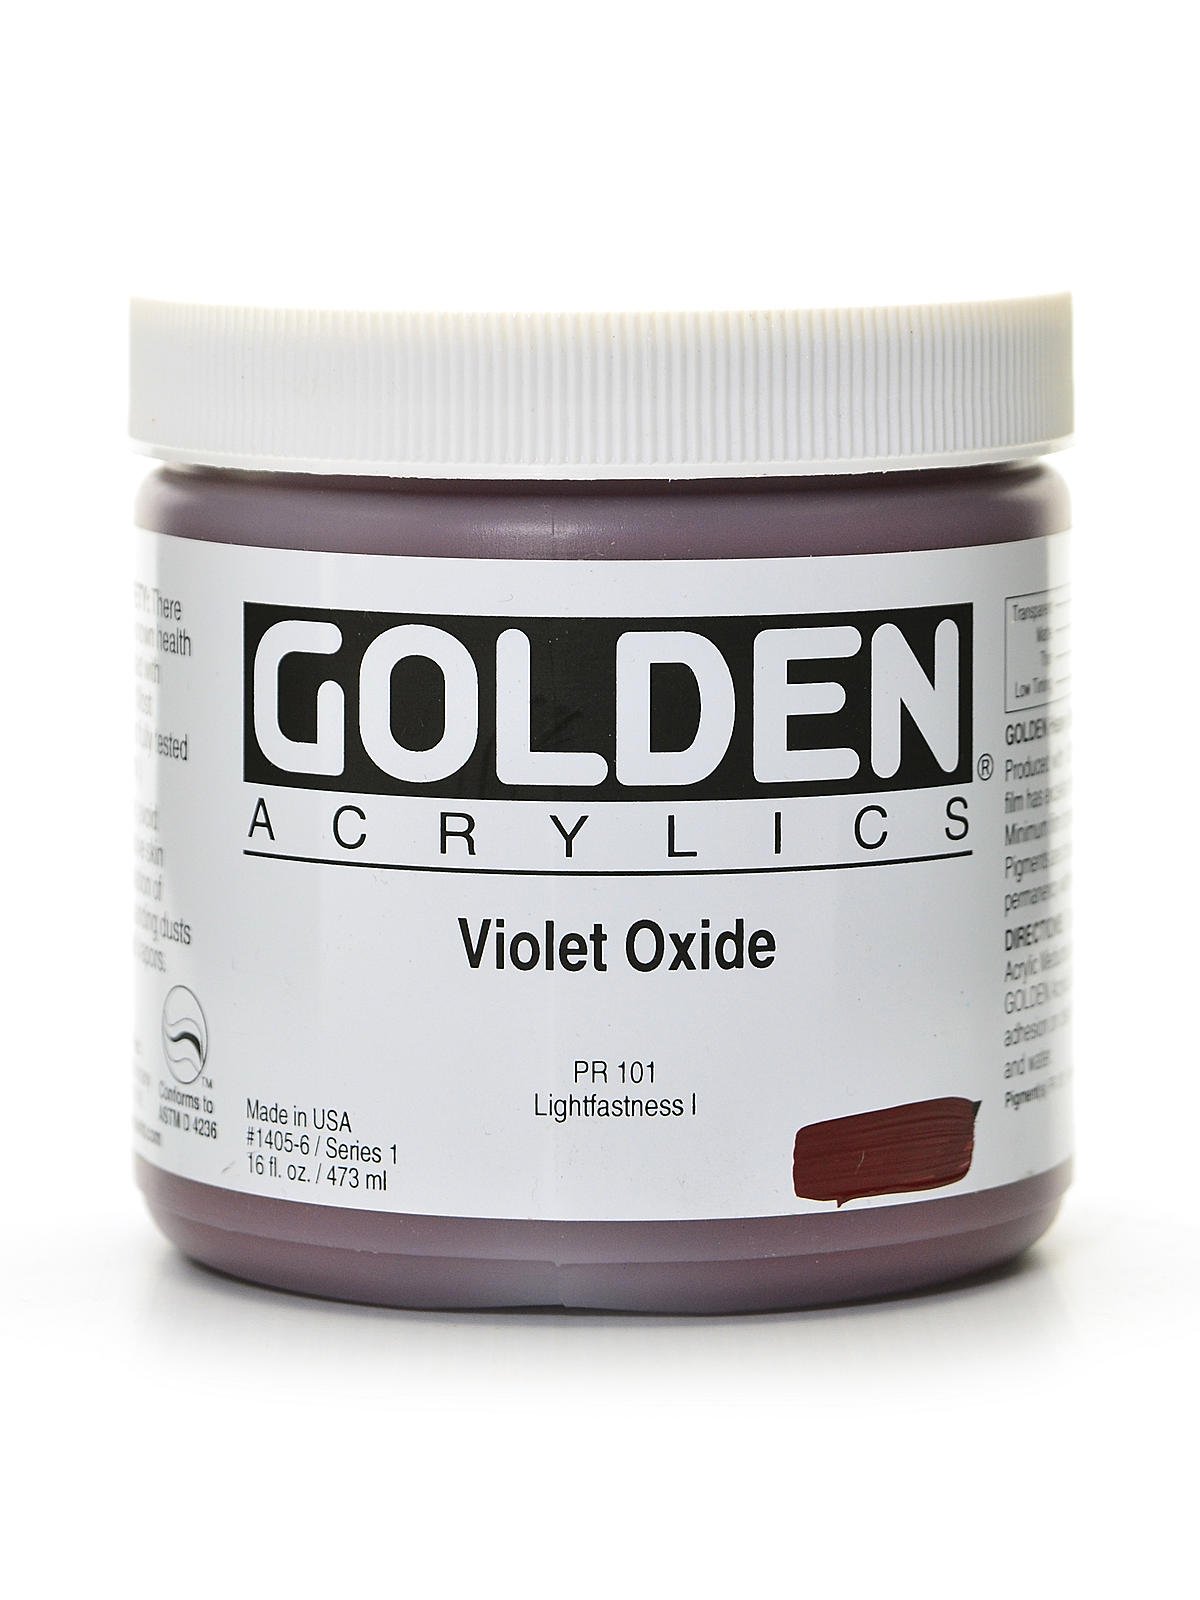 Violet Oxide